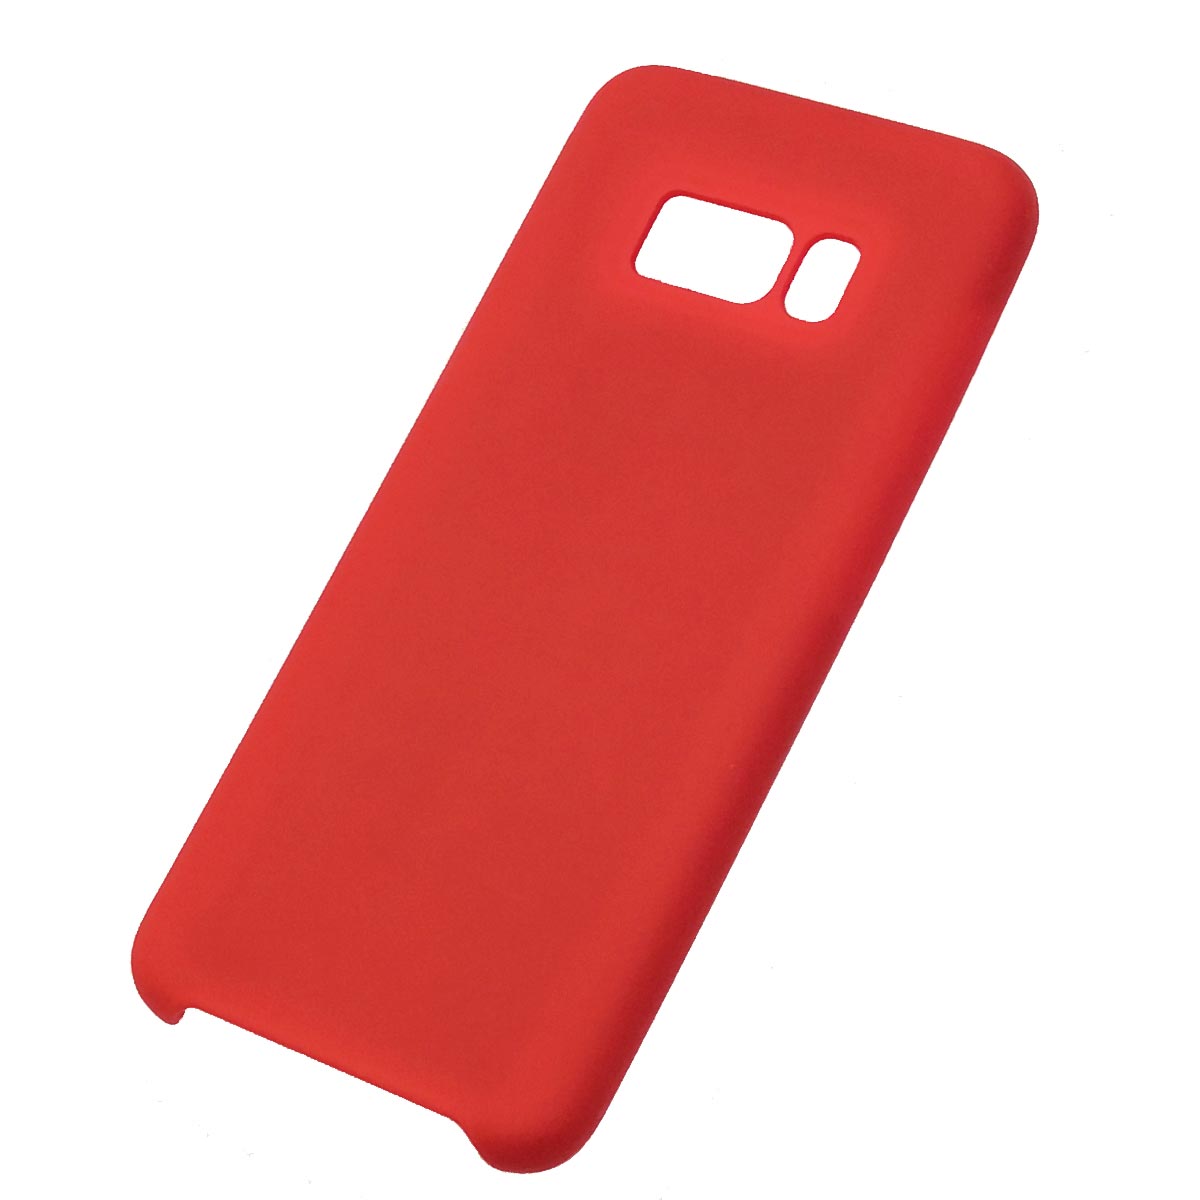 Чехол накладка Silicon Cover для SAMSUNG Galaxy S8 (SM-G950), силикон, цвет красный